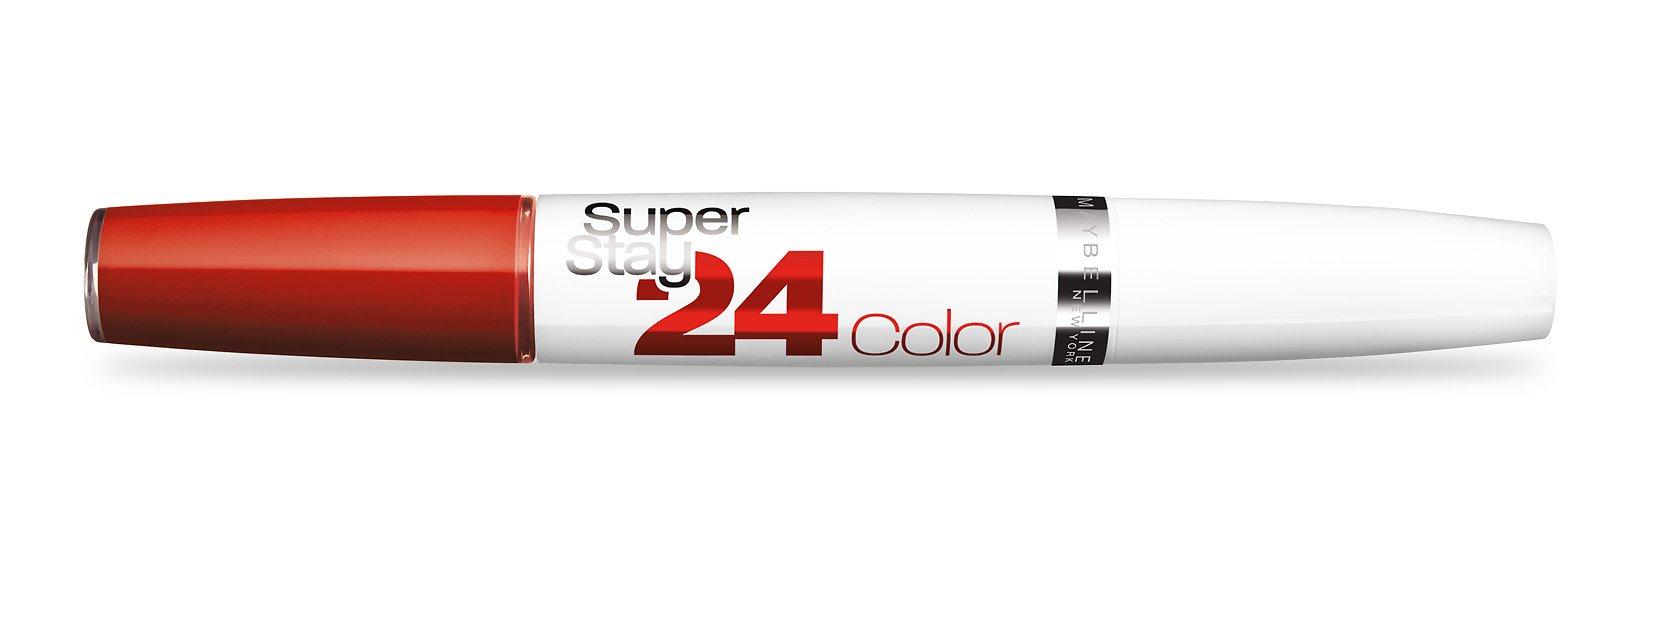 Superstay 24h Color Lipstick 542 Cherry Pie Damen Cherry Pie g#300/9ml von MAYBELLINE